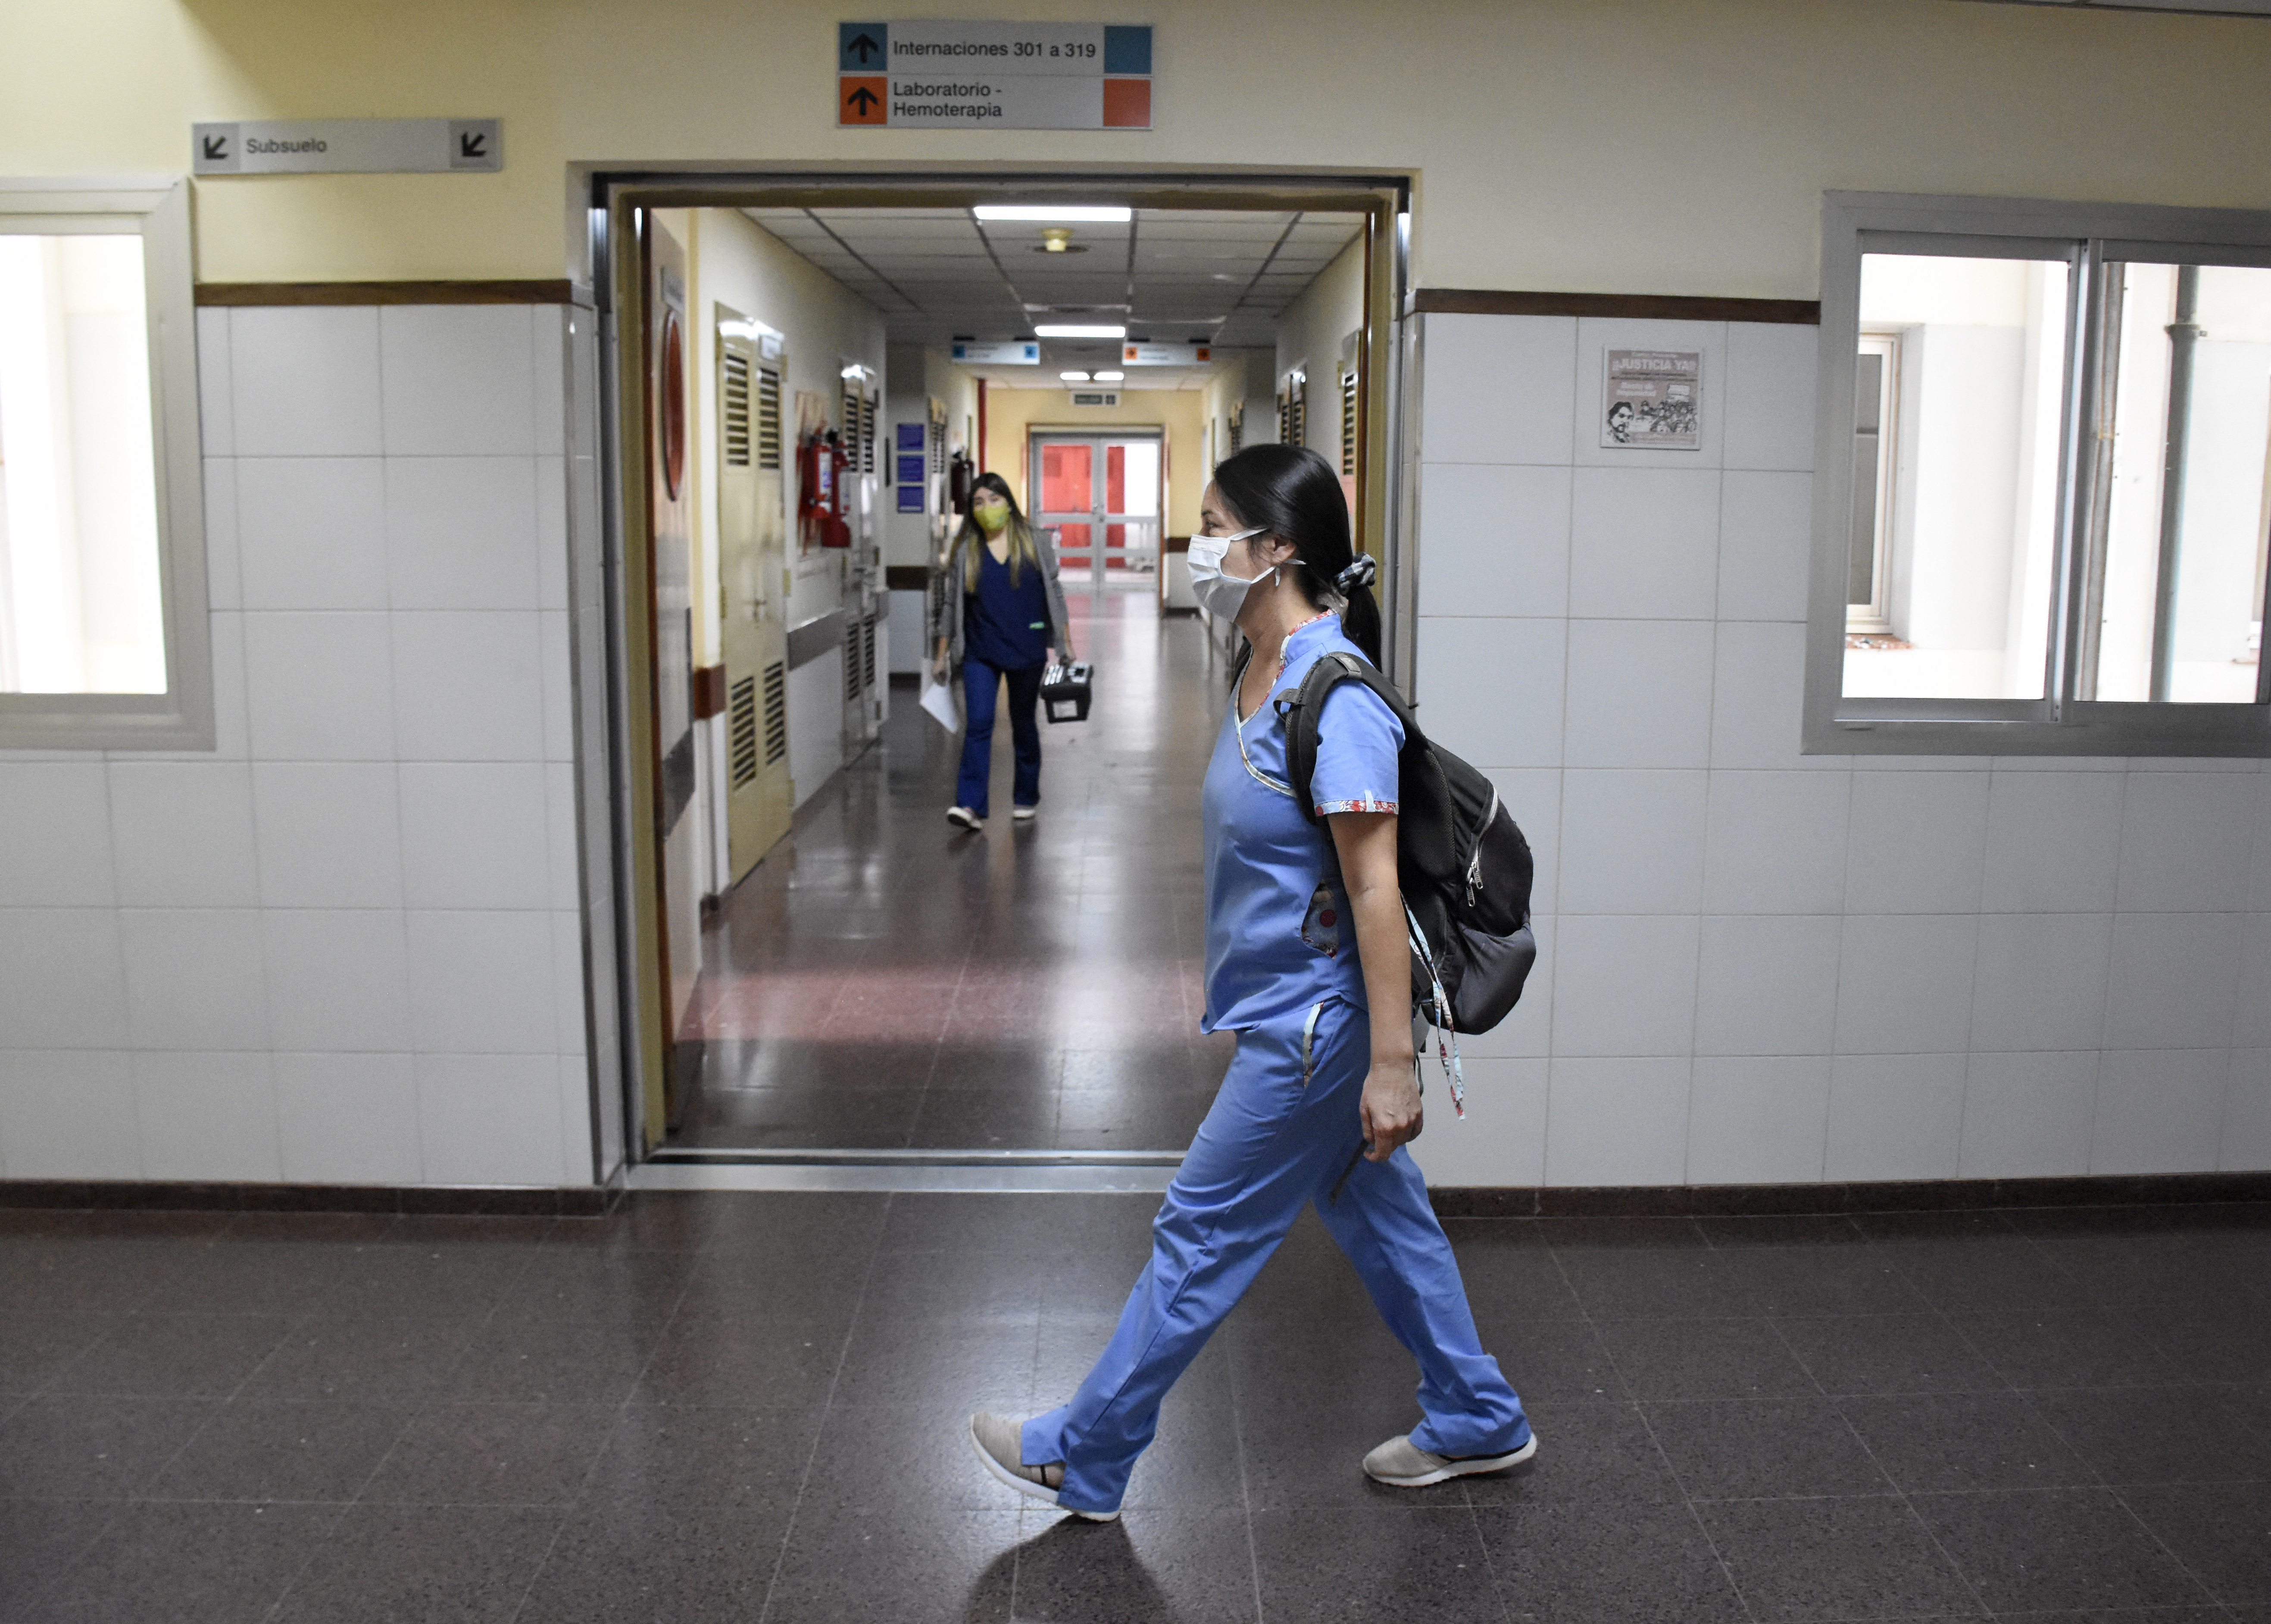 Los trabajadores de salud son los más exigidos durante la pandemia. Foto: archivo Florencia Salto.